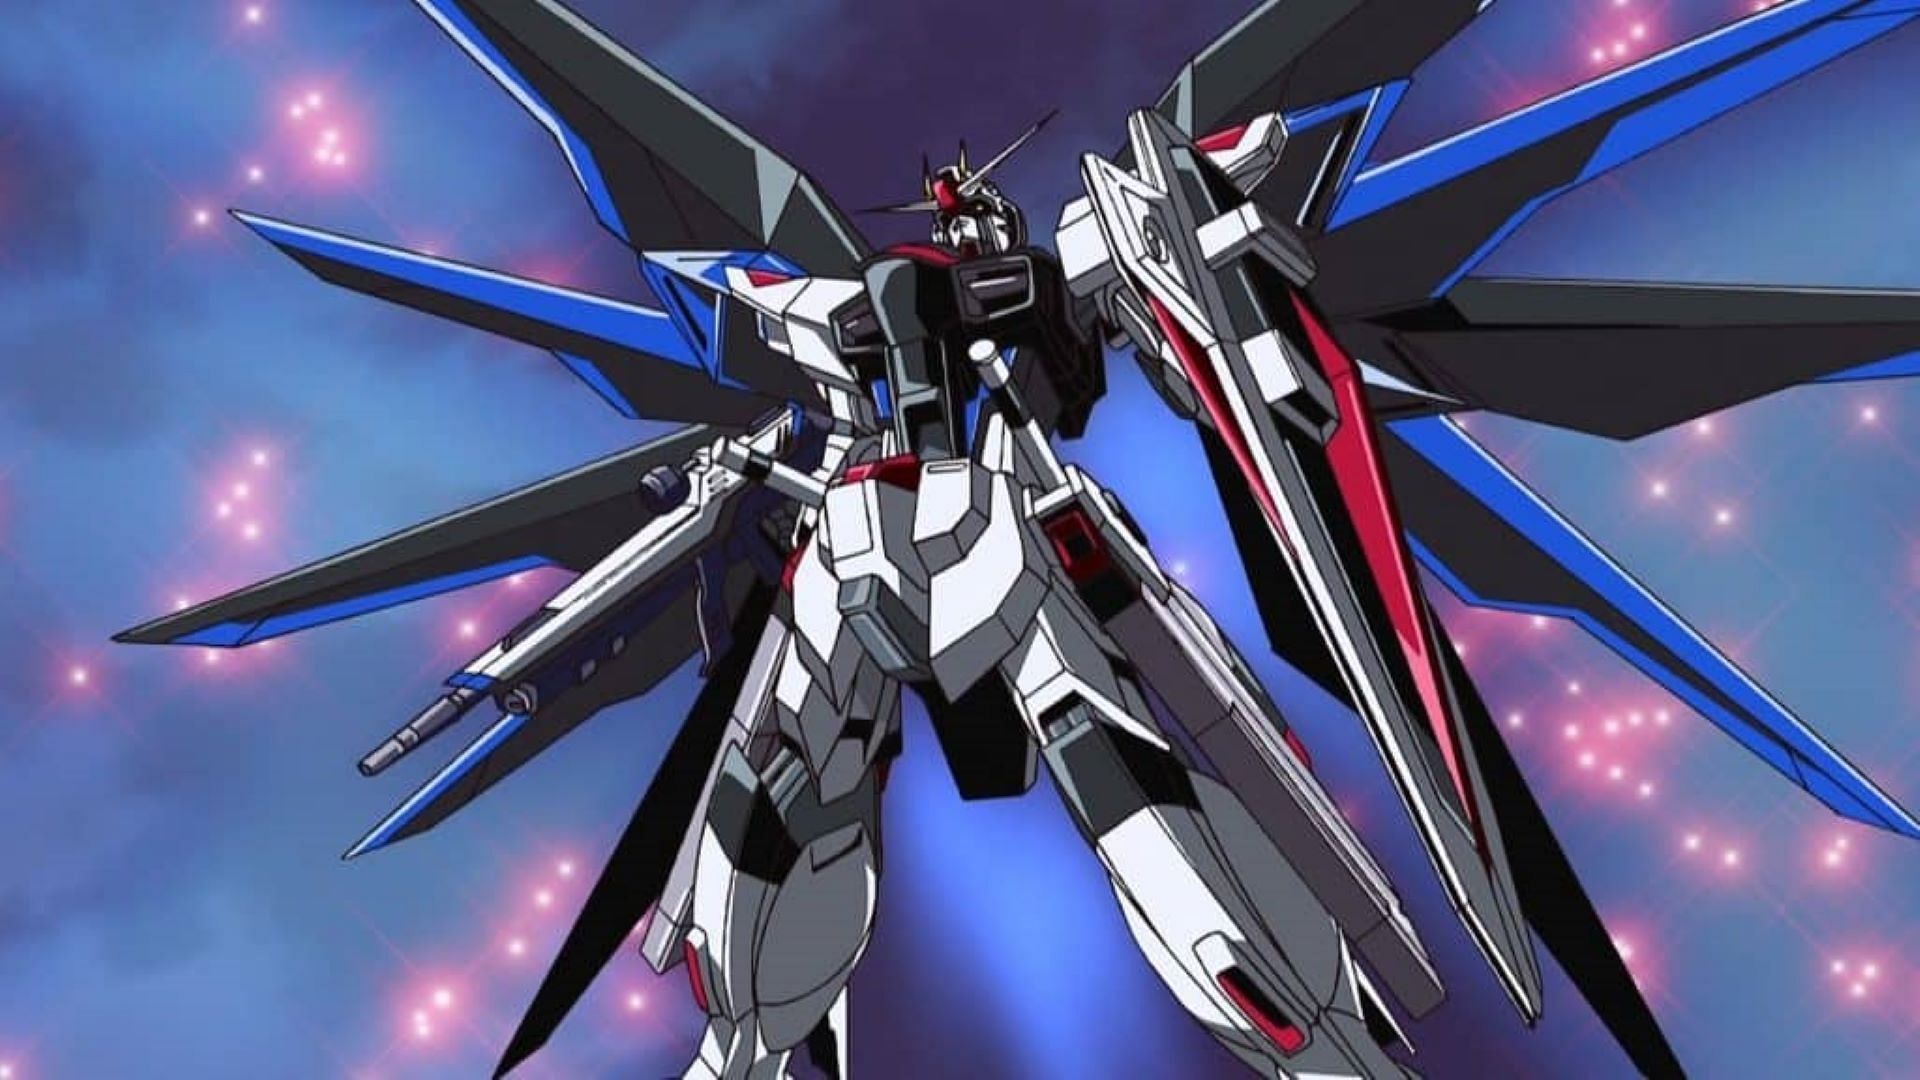 Kira Yamato's Gundam, Freedom. (Image via Sunrise)